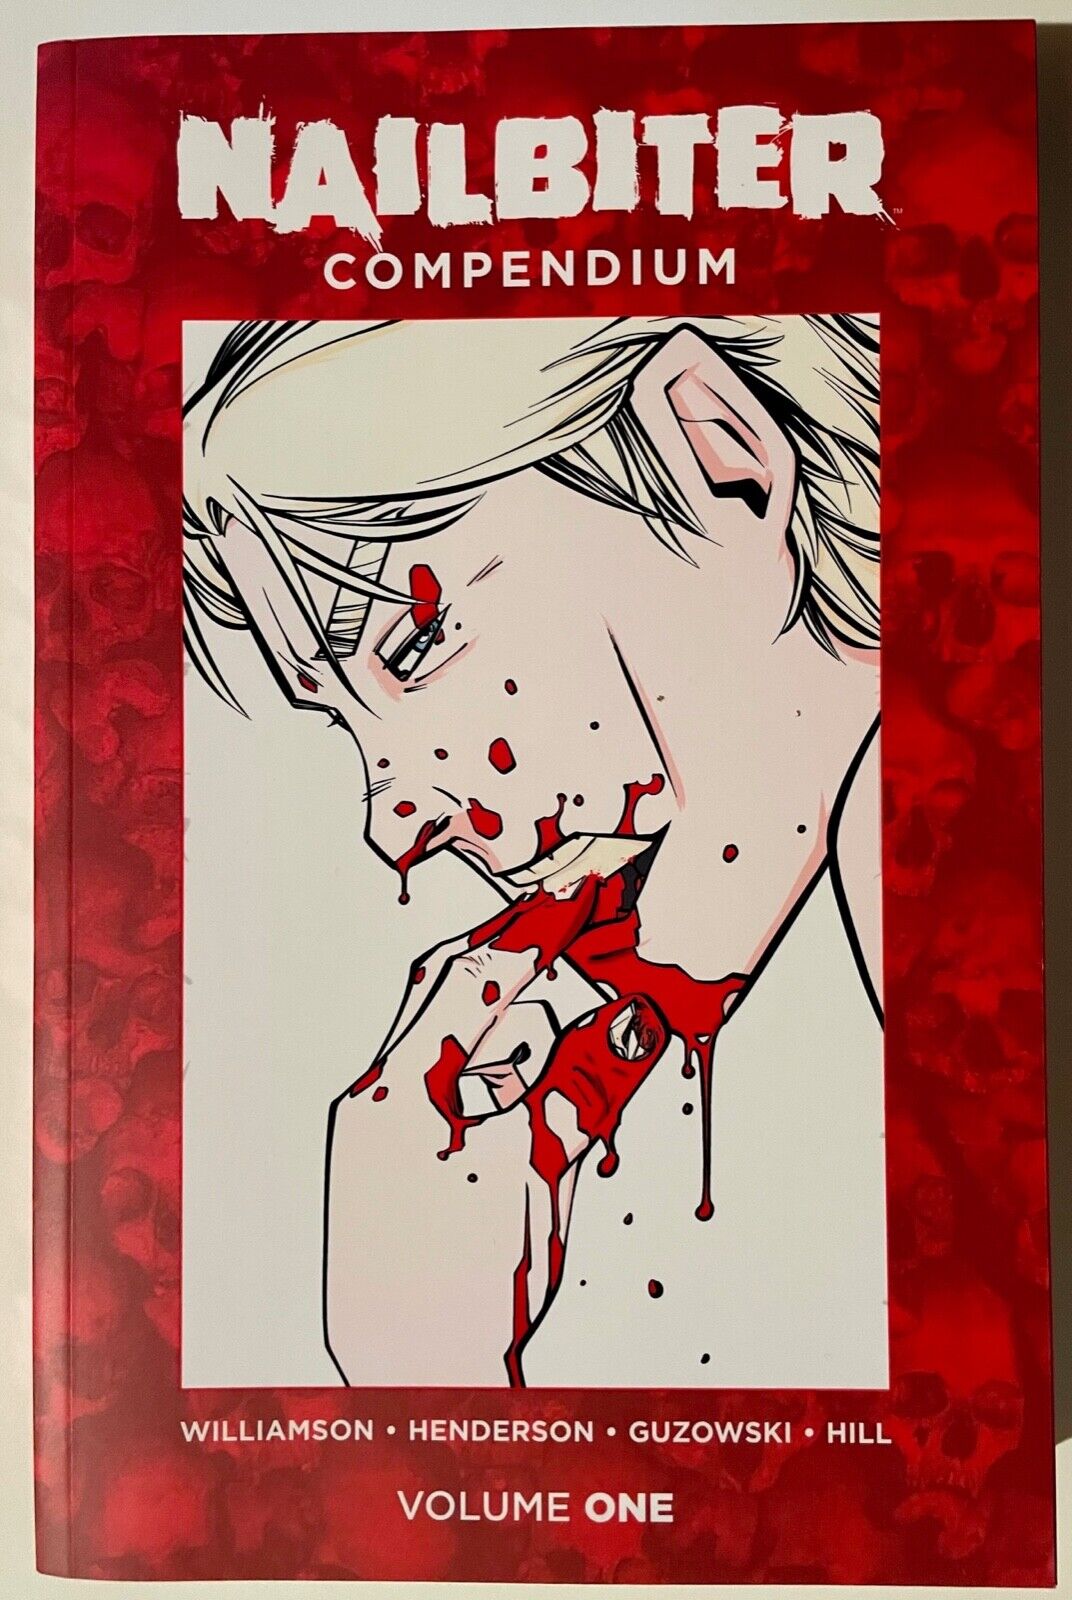 NAILBITER COMPENDIUM Vol 1 Joshua Williamson Image Comics Horror 744 pgs NEW